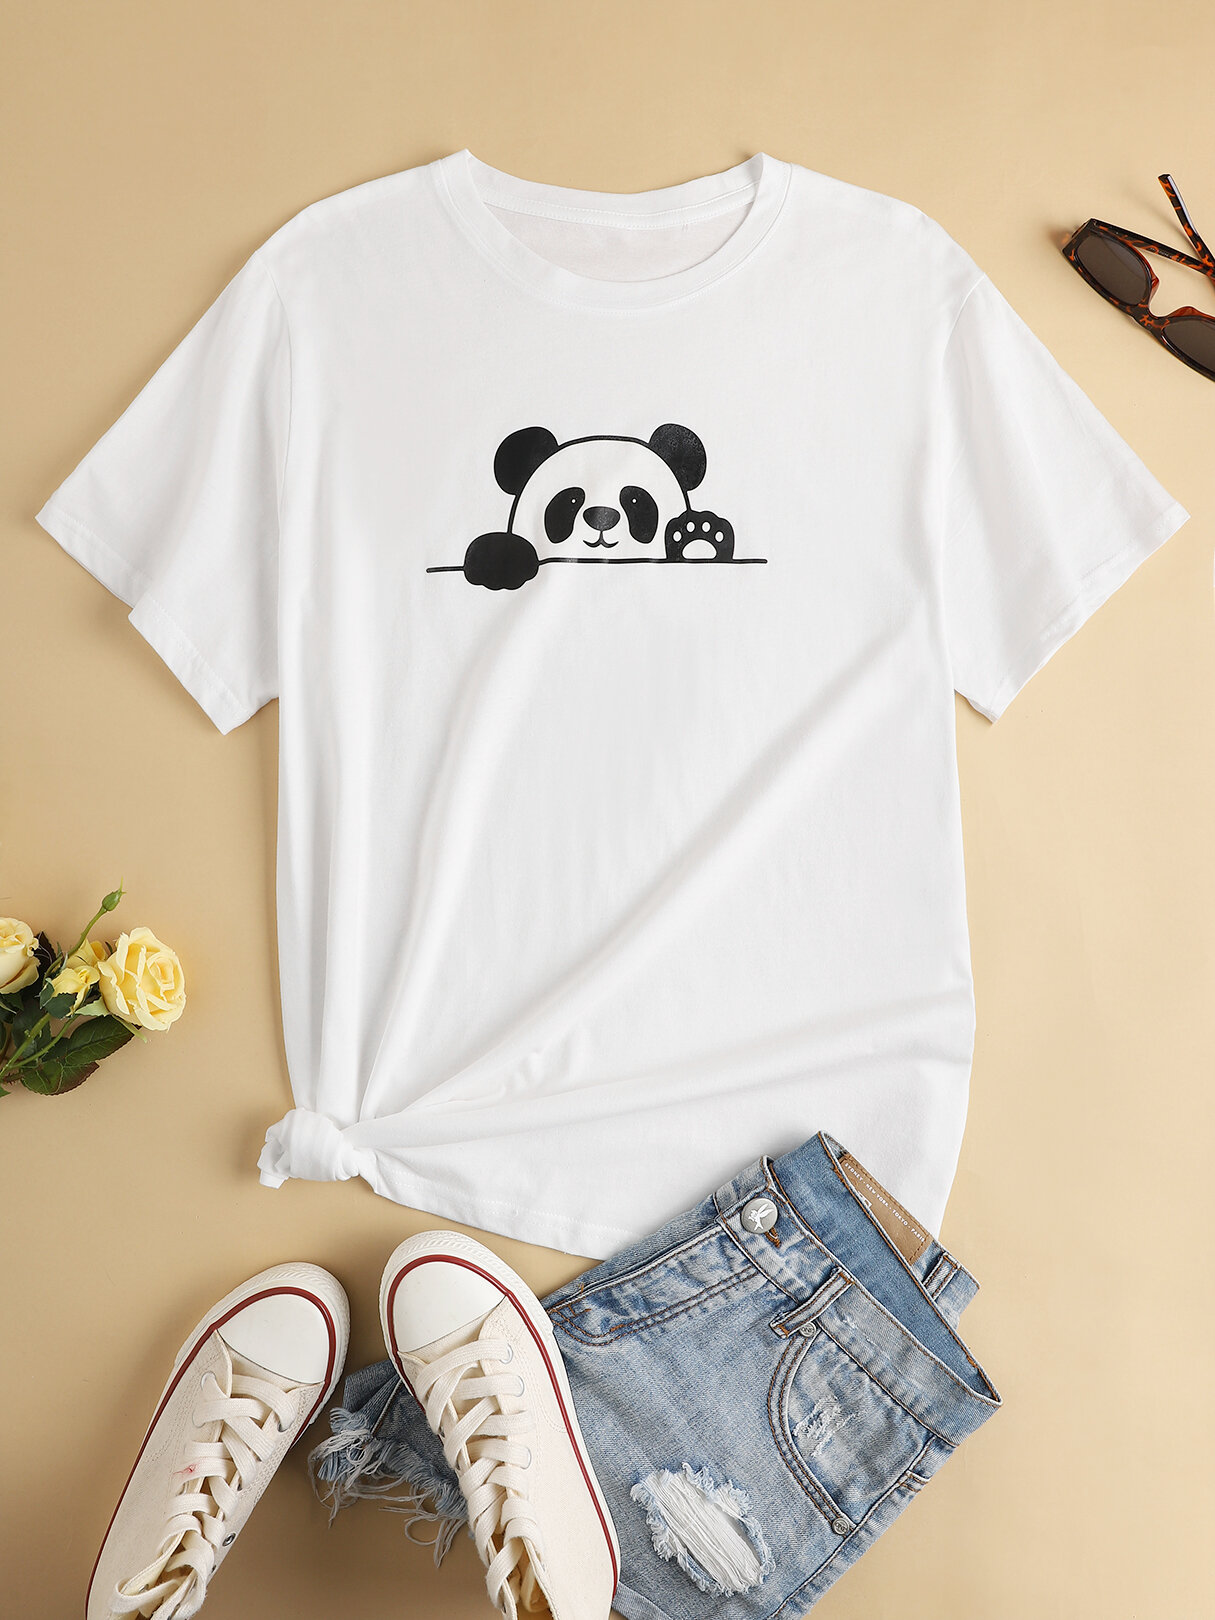 Plus Size Crew Collo Panda T-shirt manica corta